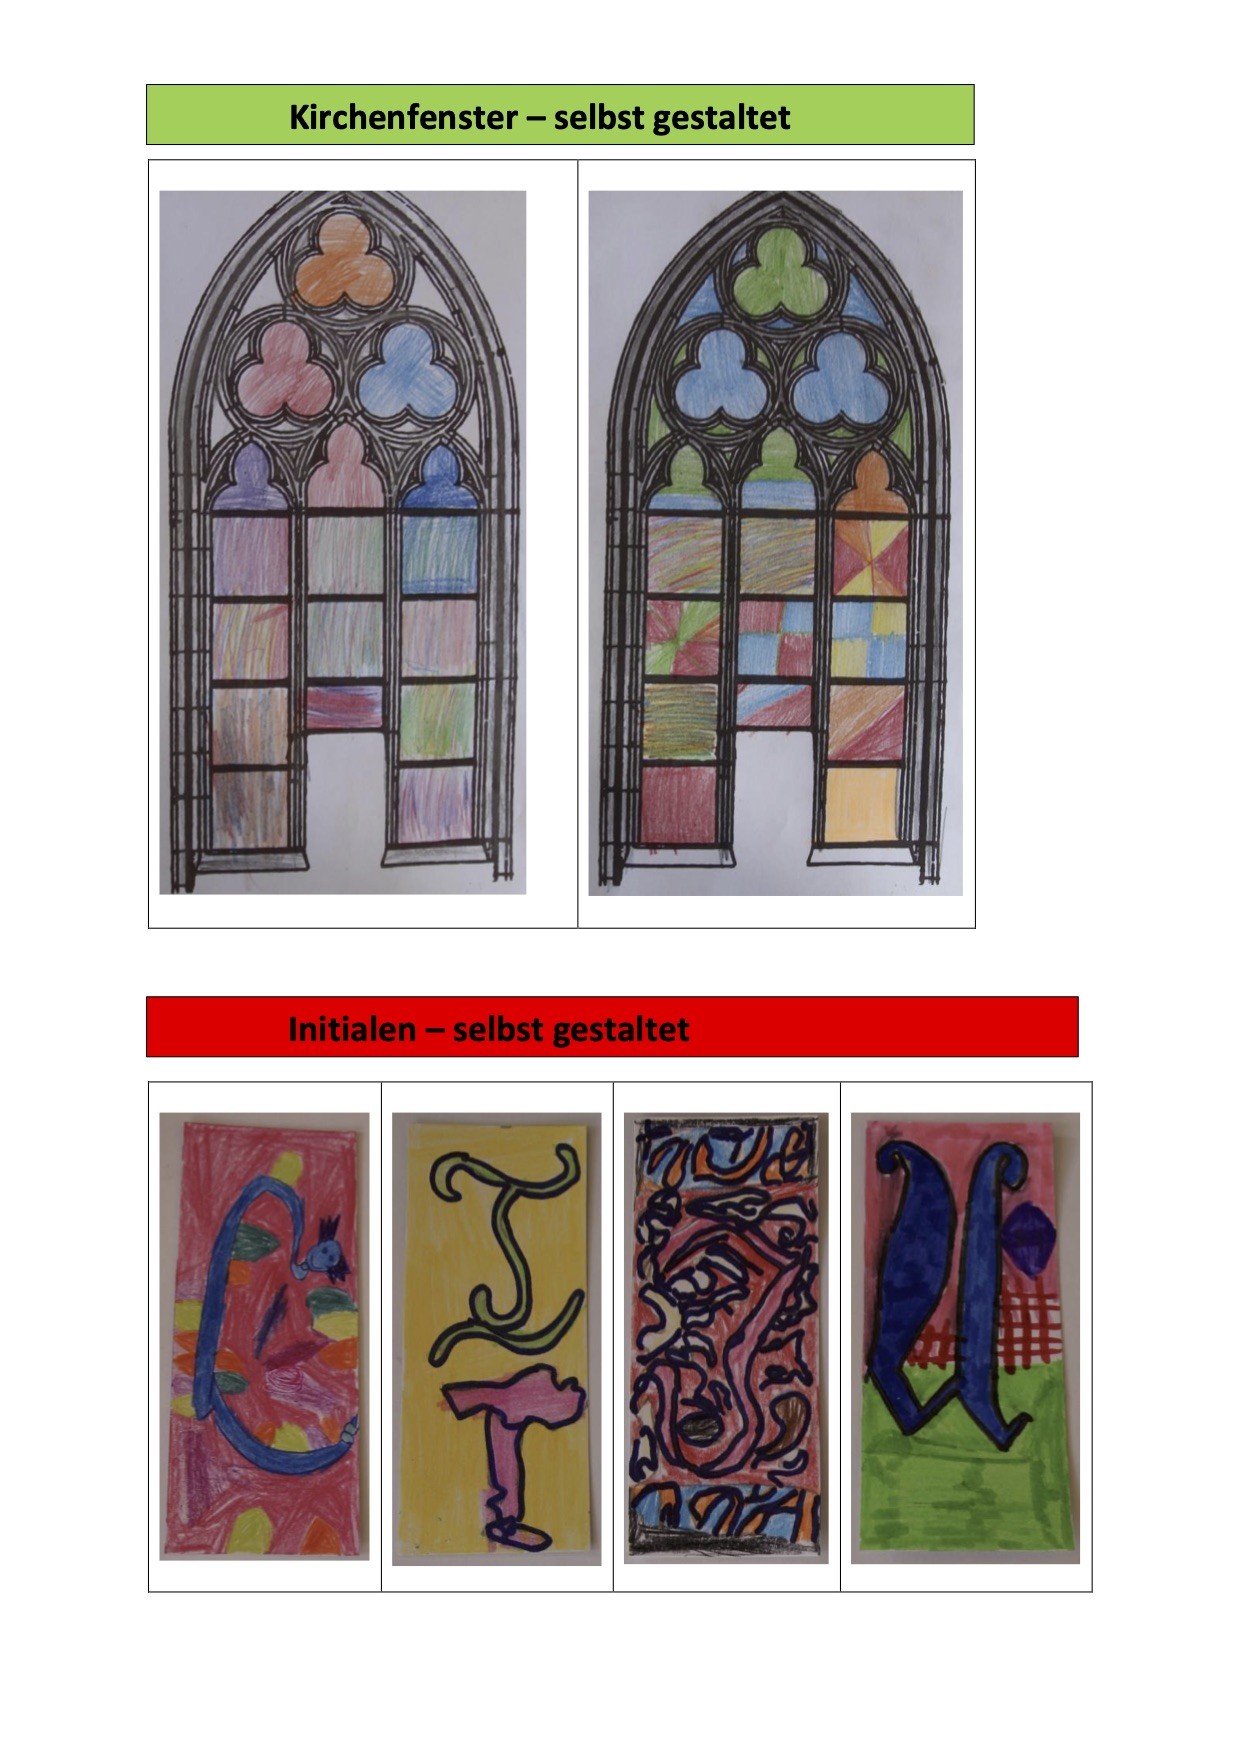 Kirchenfenster und Initialen